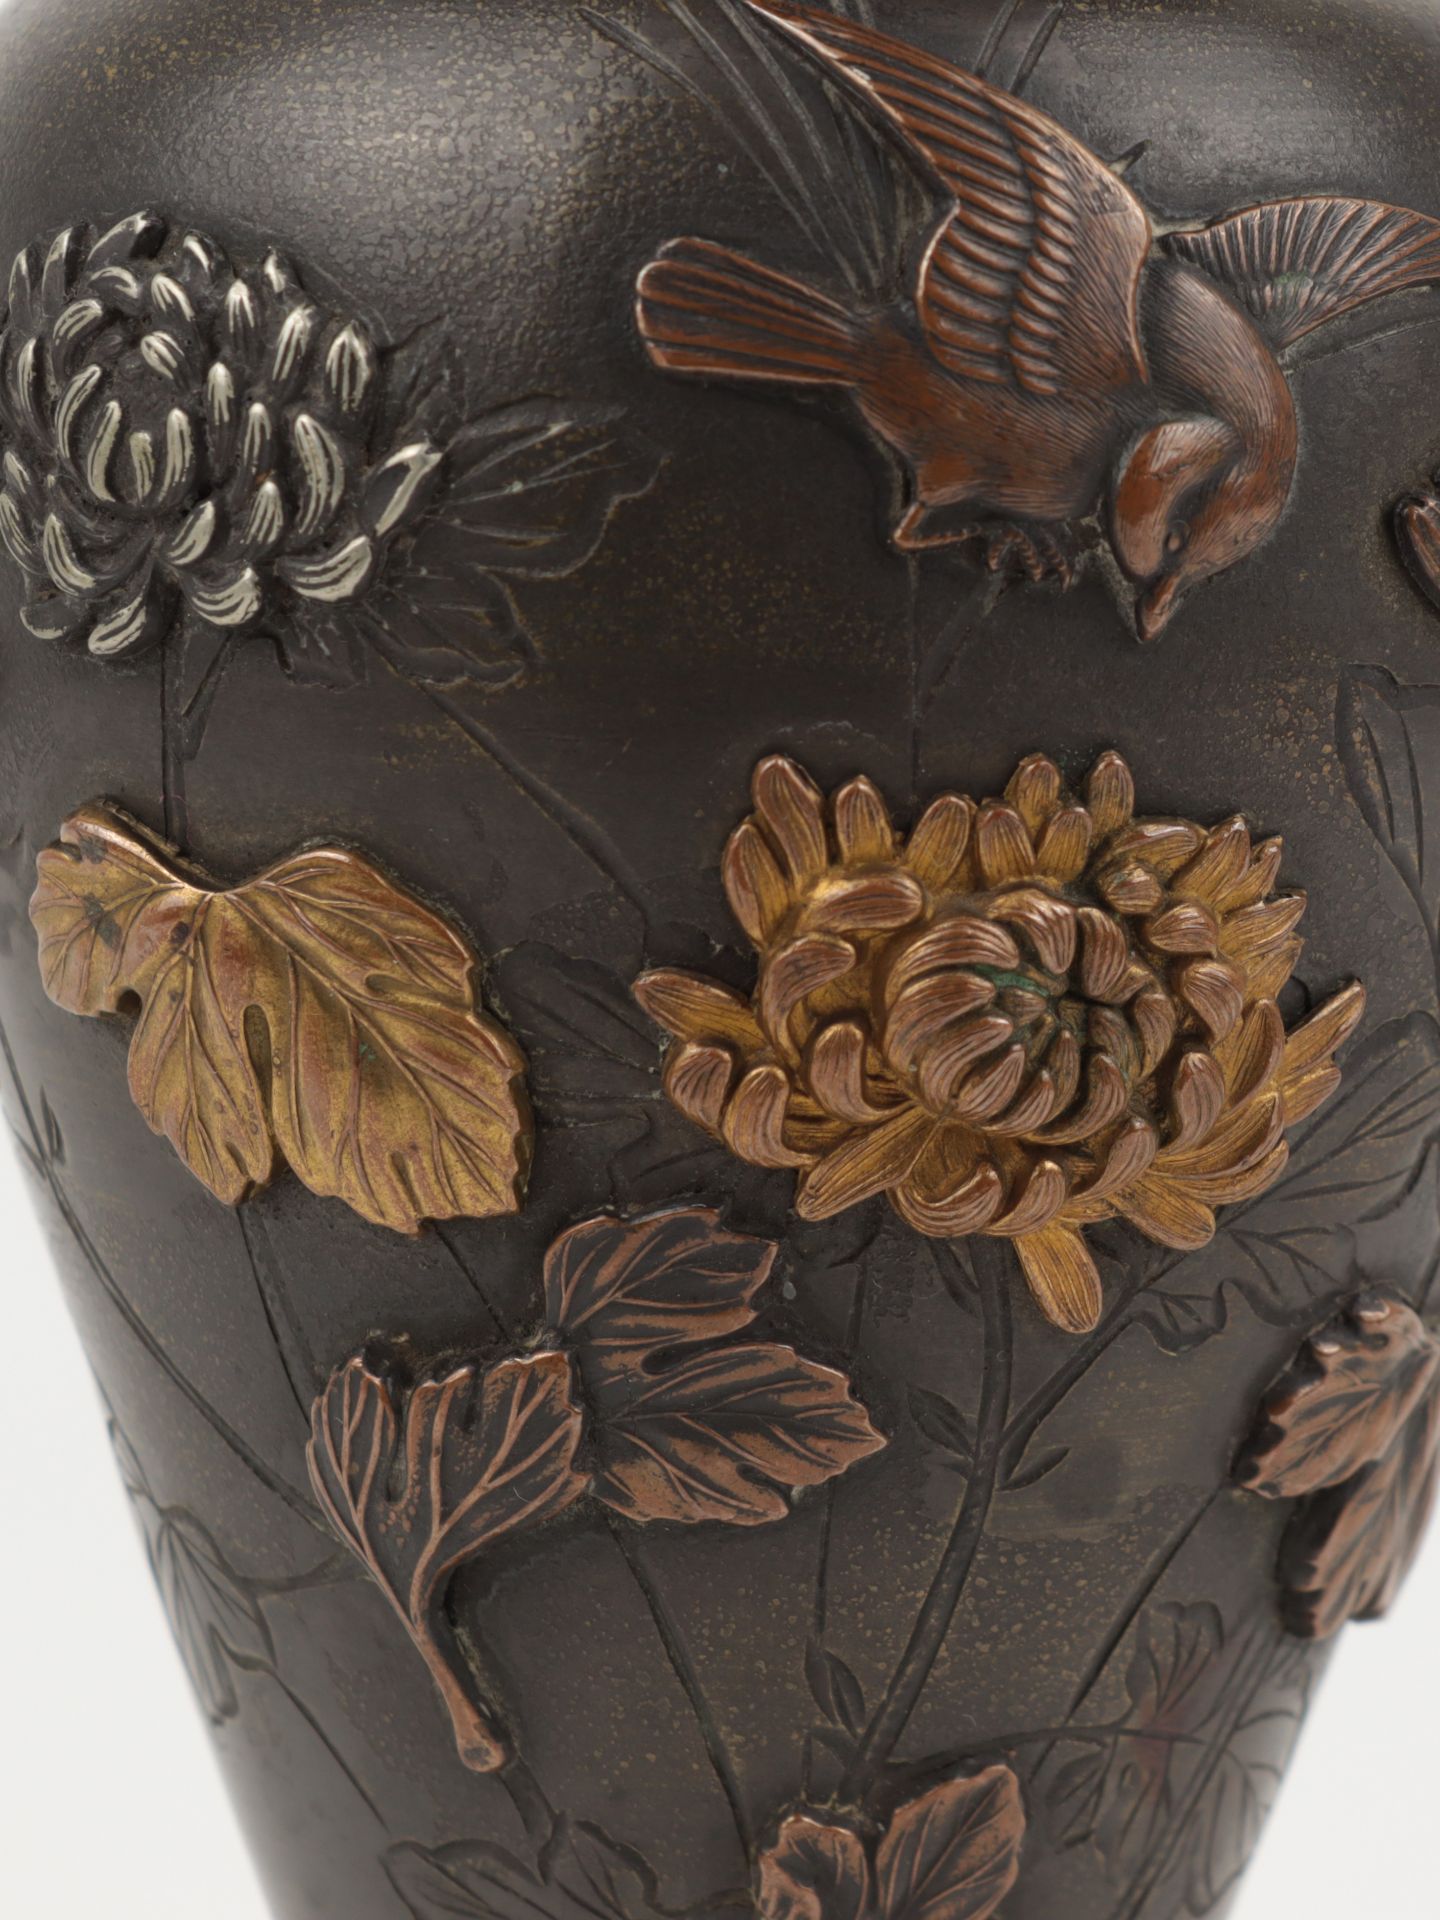 Vase um 1900, Japan, Bronze, reliefiert, Ritzdekor u. Metallauflagen in Kupfer, Messing u. a., - Bild 3 aus 5